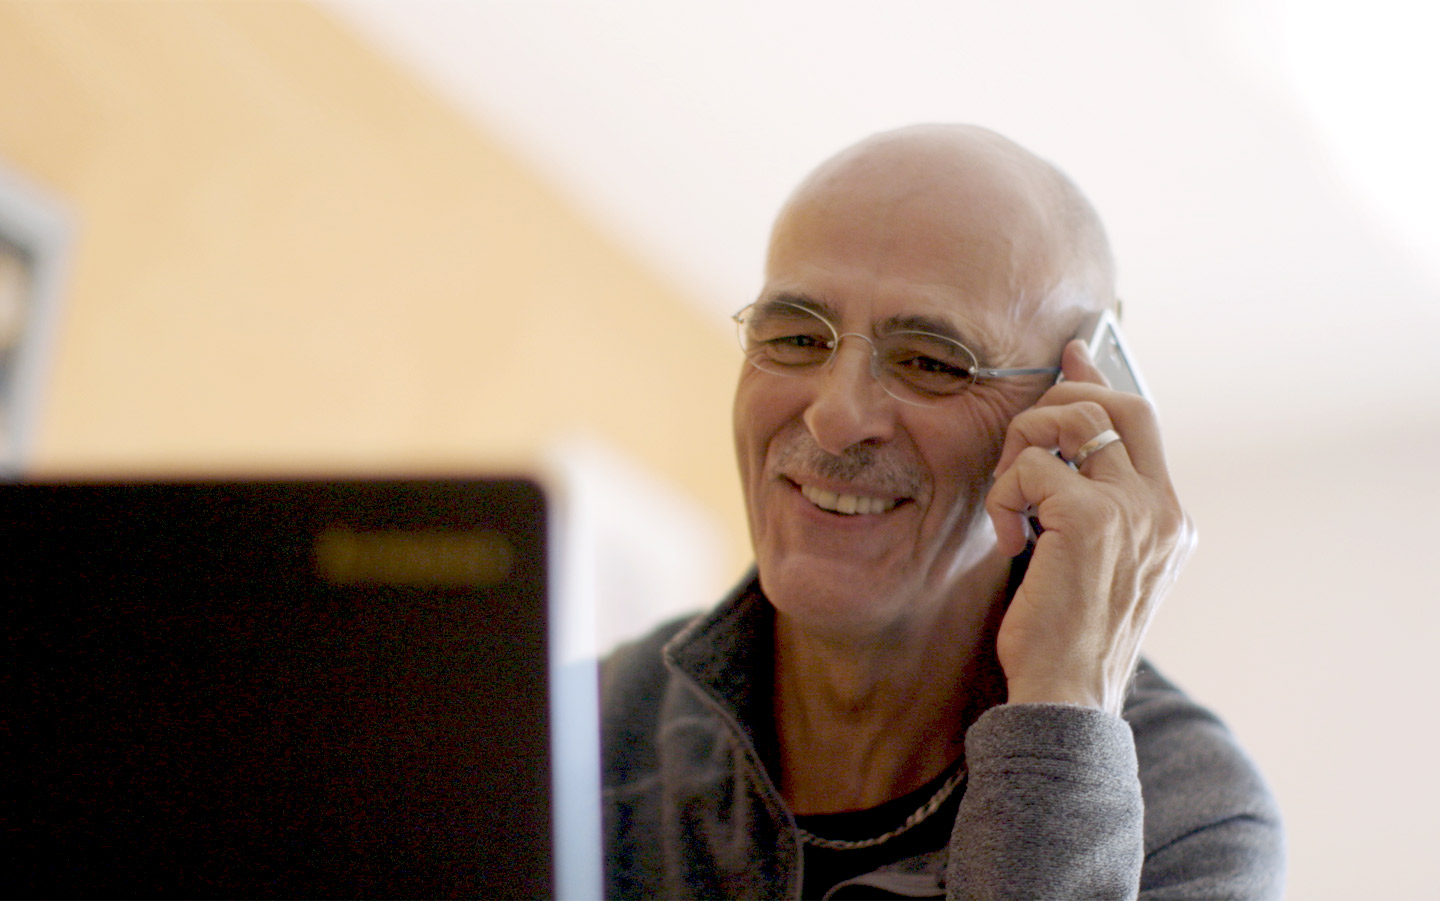 Un homme parle au téléphone avec une personne portant également un implant auditif Cochlear 